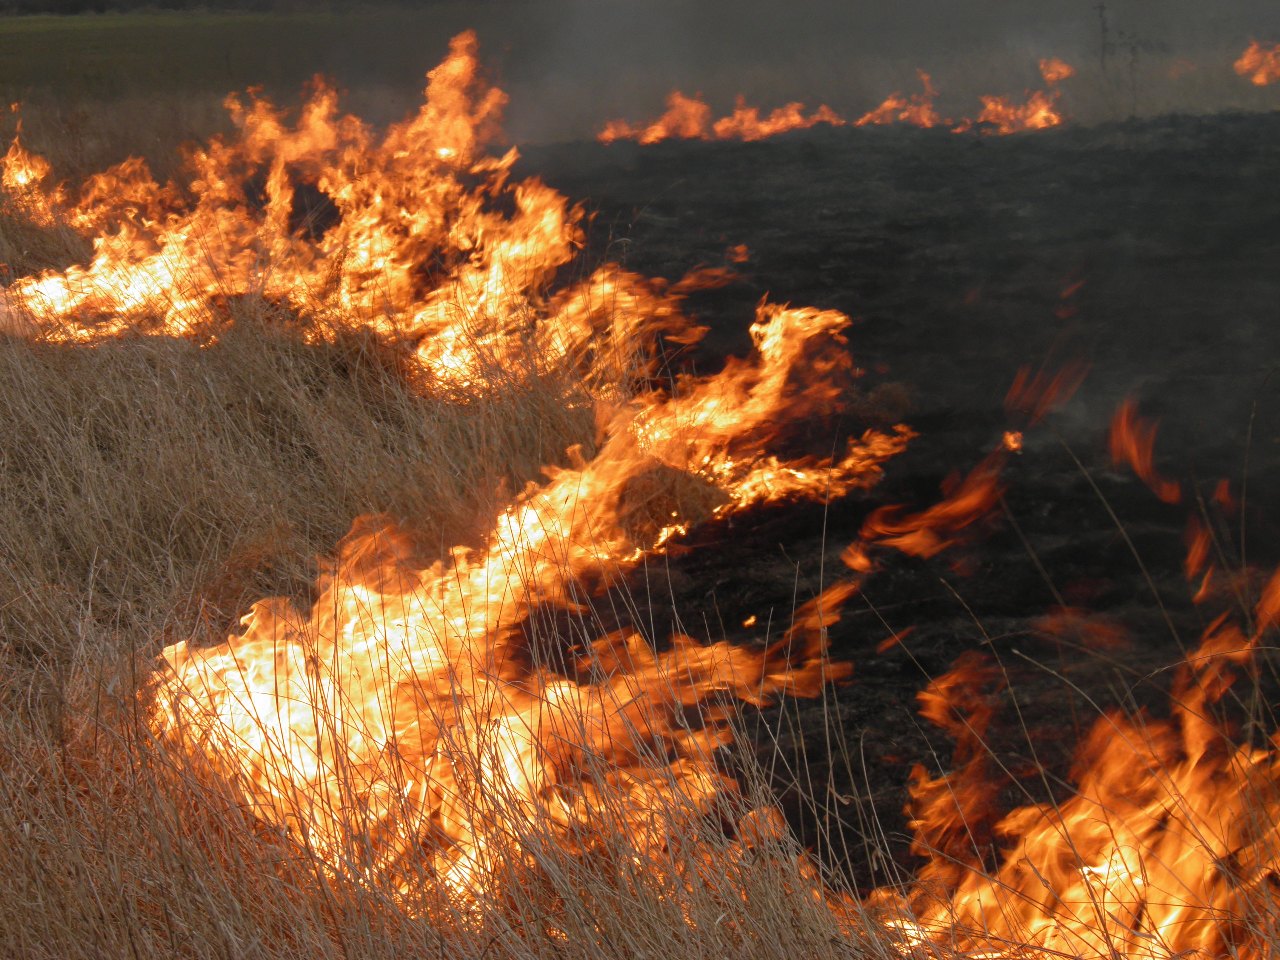 5 августа в послеобеденное время сотрудниками ГСЧС области, были зафиксированы сообщения о случаях самопроизвольного возгорания сухой травы, кустарников и мусора на открытой территории.